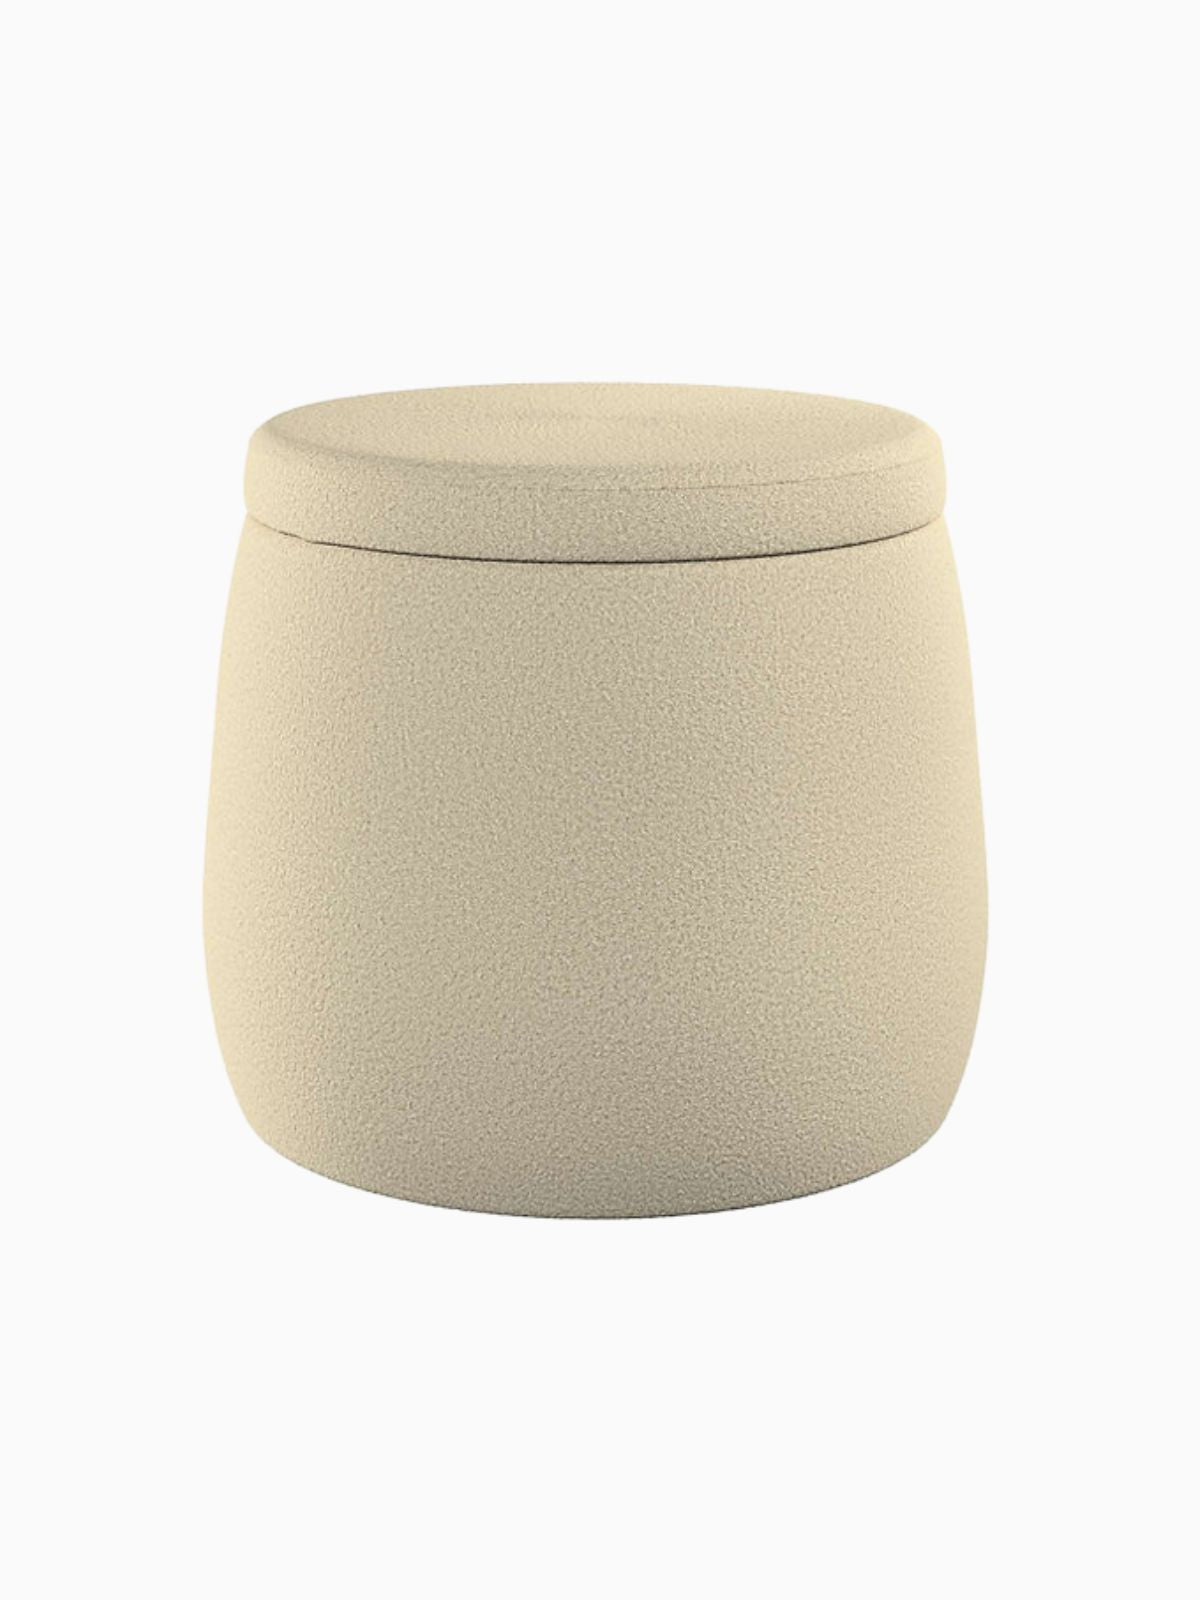 Pouf contenitore Candy Jar in velluto, colore beige chiaro 40x40 cm.-1